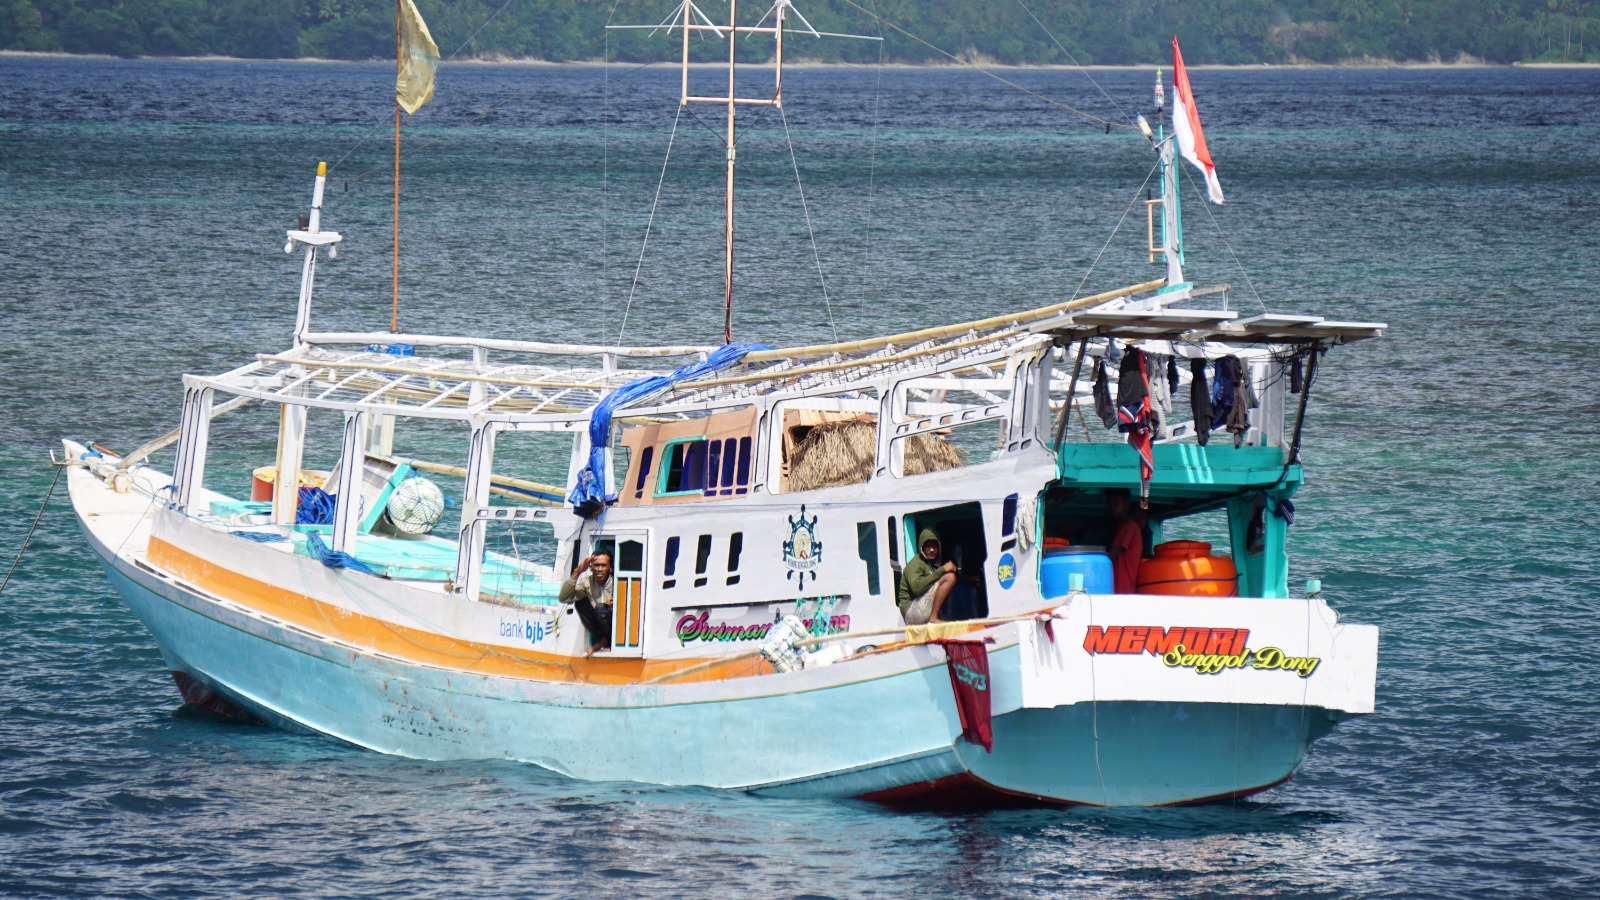 KKP Tertibkan 3 Kapal Ikan Di Laut Aru